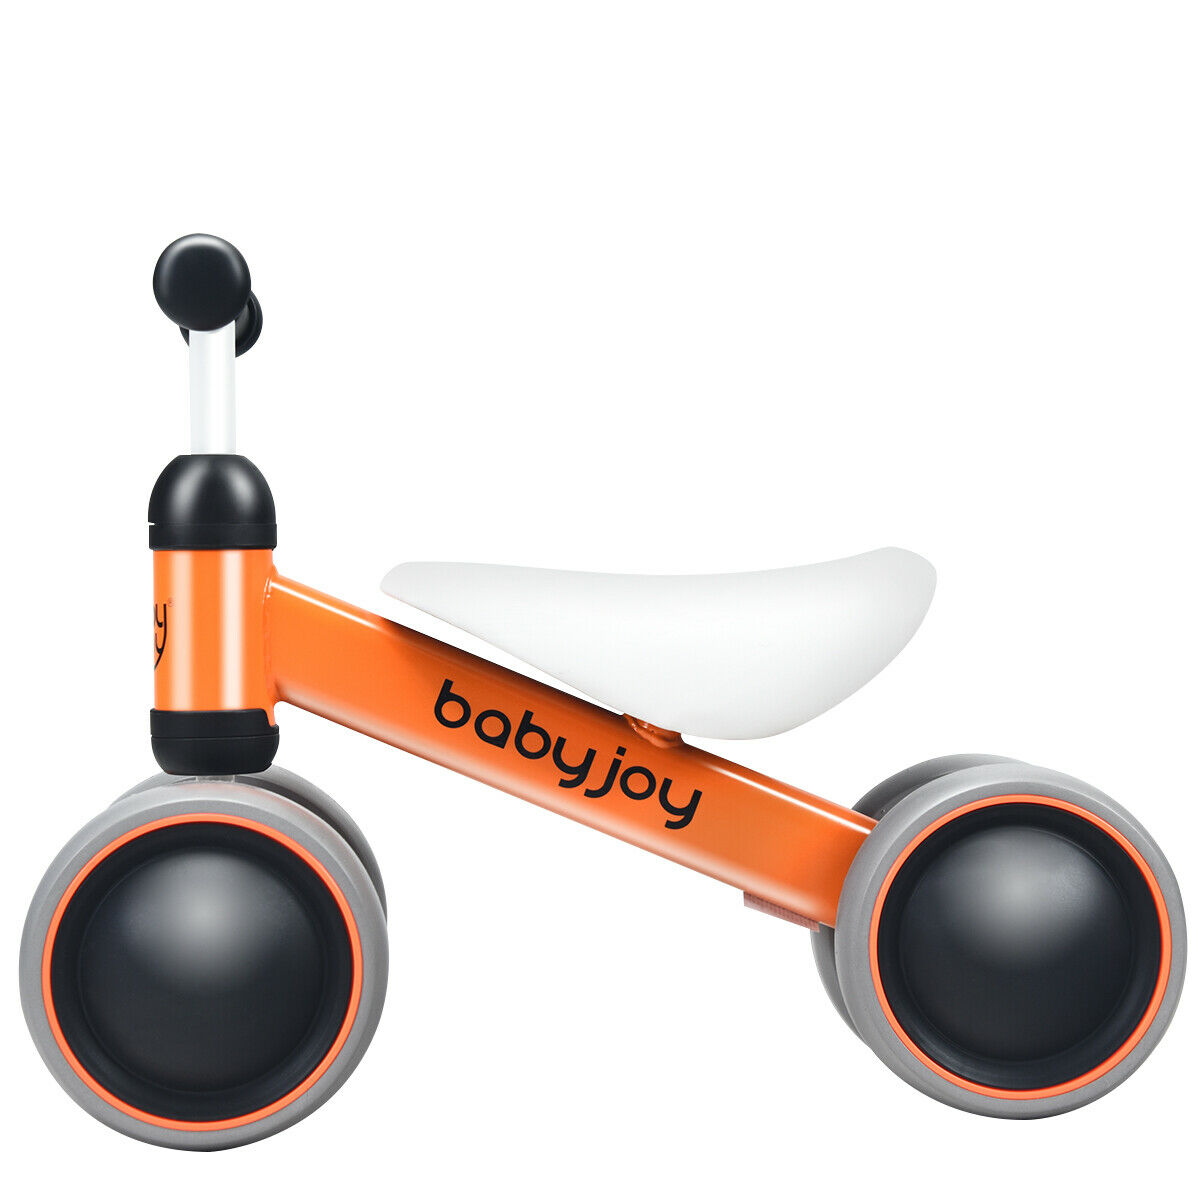 Babyjoy 4 Wheels Baby Balance Bike Children Walker No-Pedal Toddler Toys Rides Orange - image 1 of 10